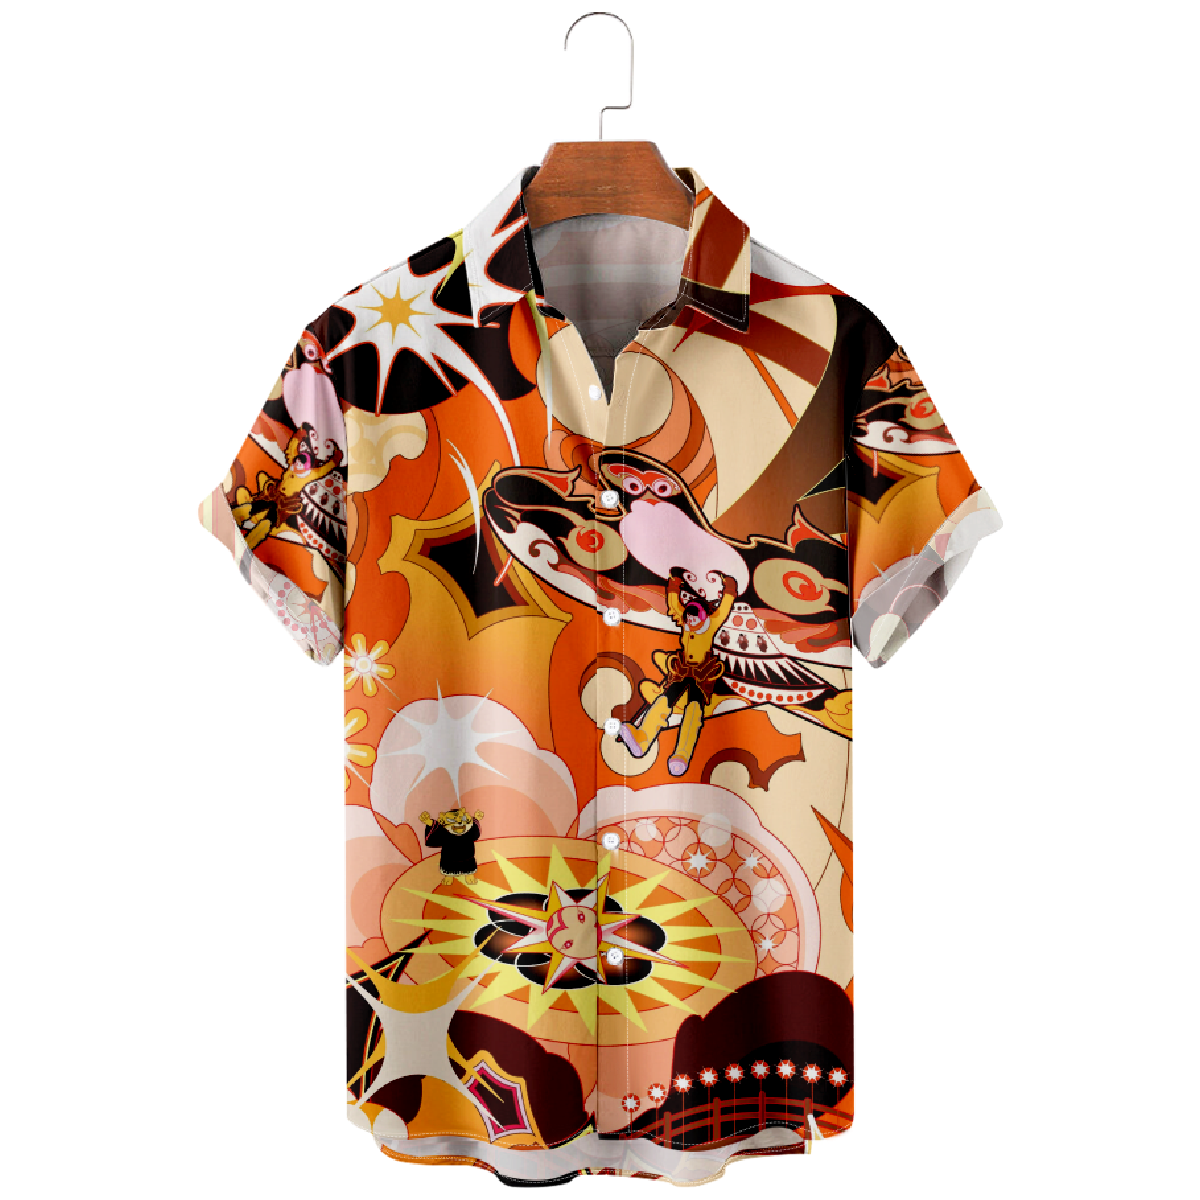 Kite Graphic Print Hawaiian Shirt Men's Button Up Shirt Short Sleeve Regular Fit 